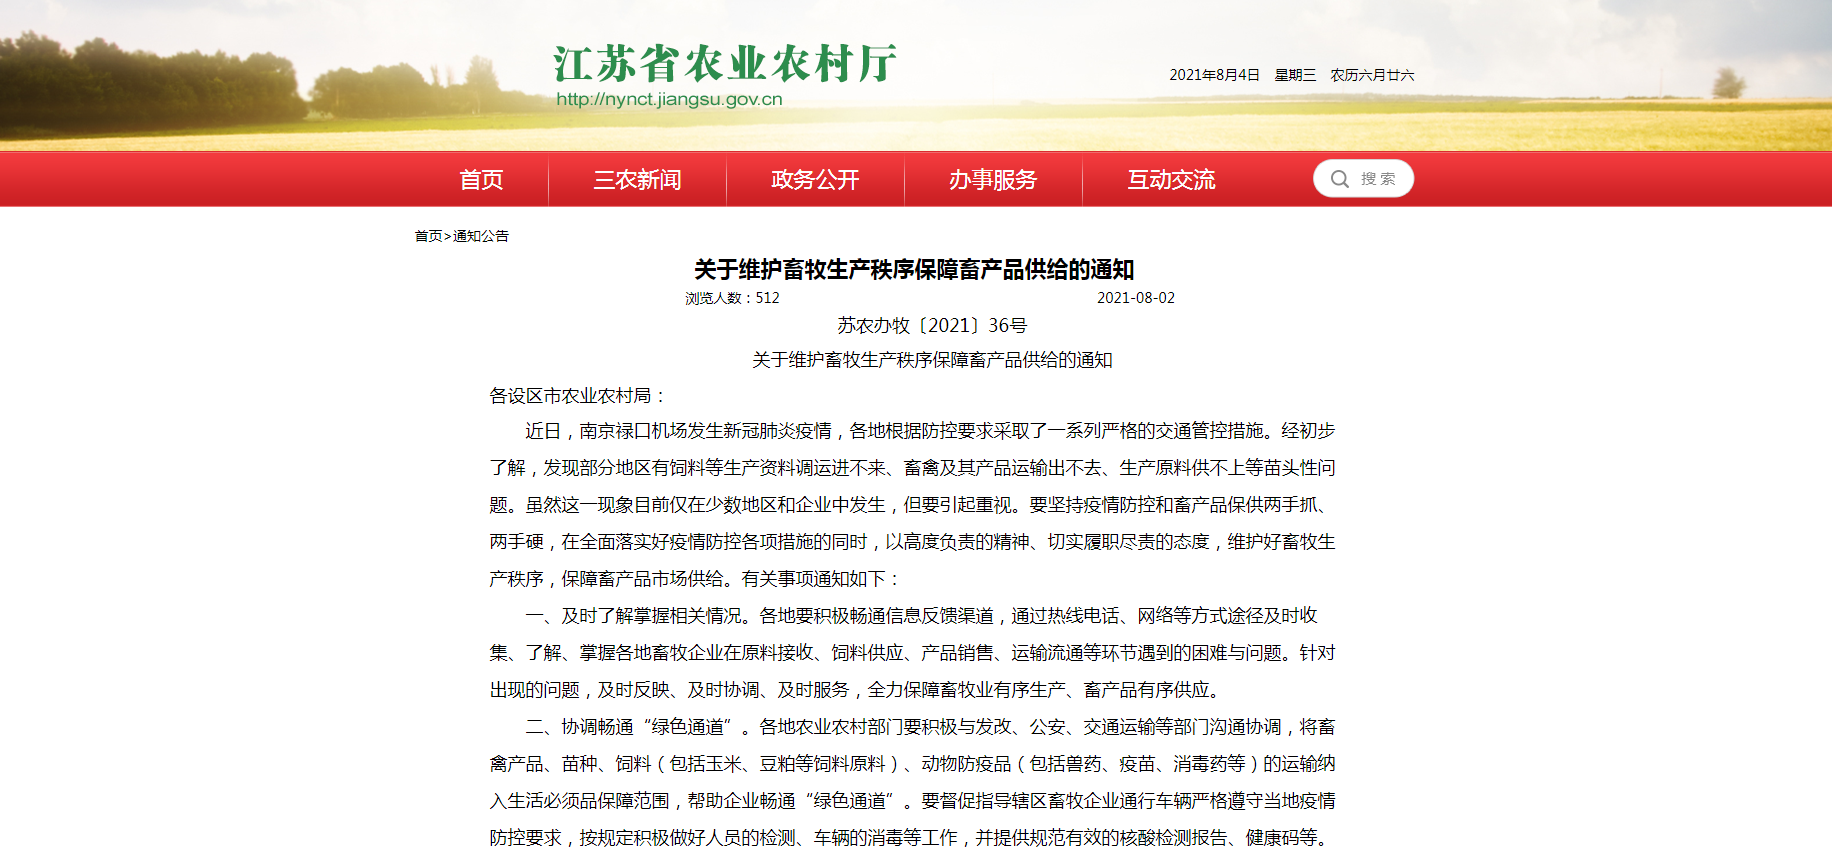 江苏省农业农村厅发布关于维护畜牧生产秩序保障畜产品供给的通知